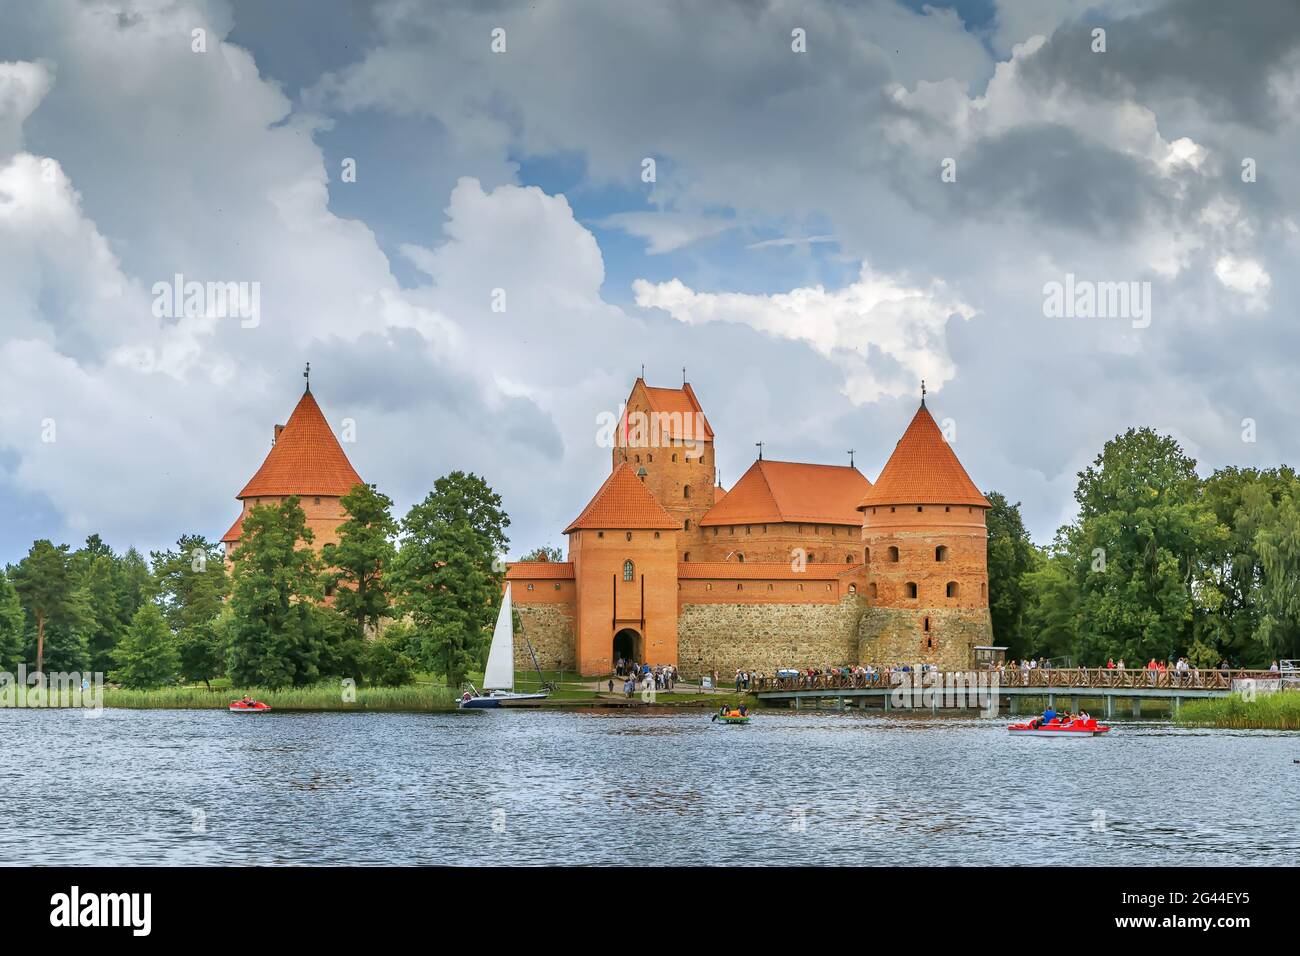 Trakai Island Castle, Lithuania Stock Photo